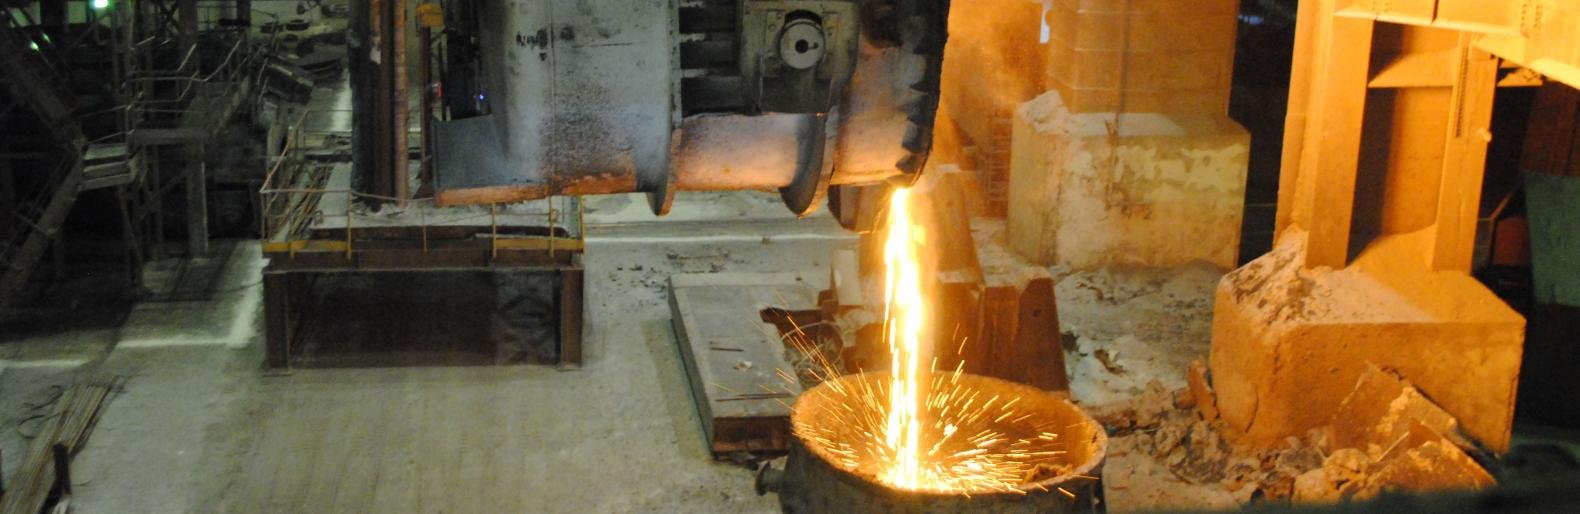 Сталевары ОЭМК раскрывают секреты производства стали